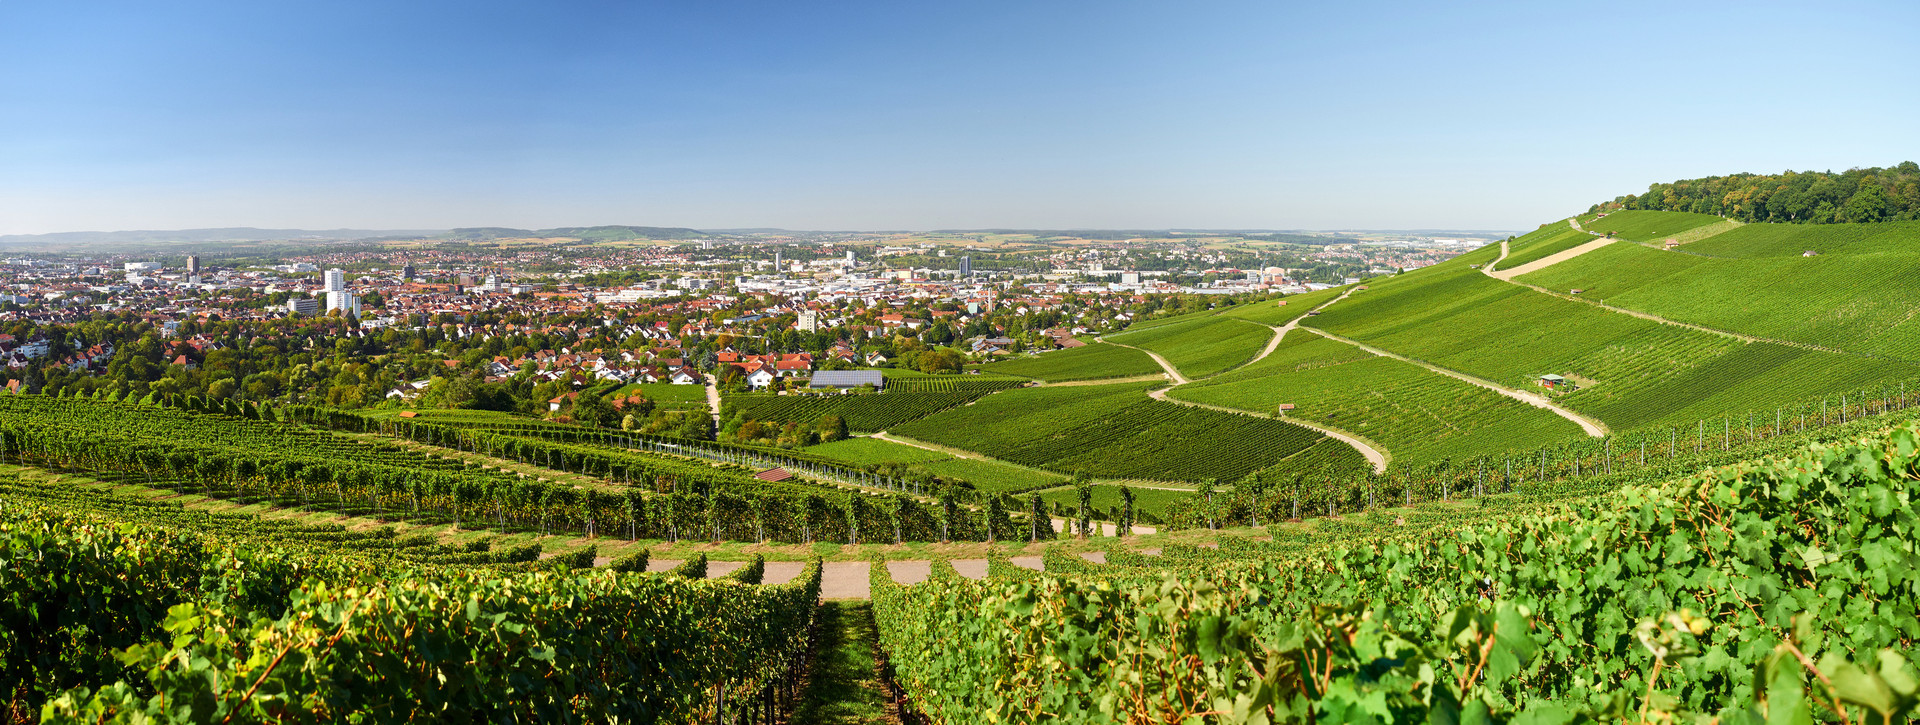 Landfläche in Heilbronn mit Blick auf Stadt